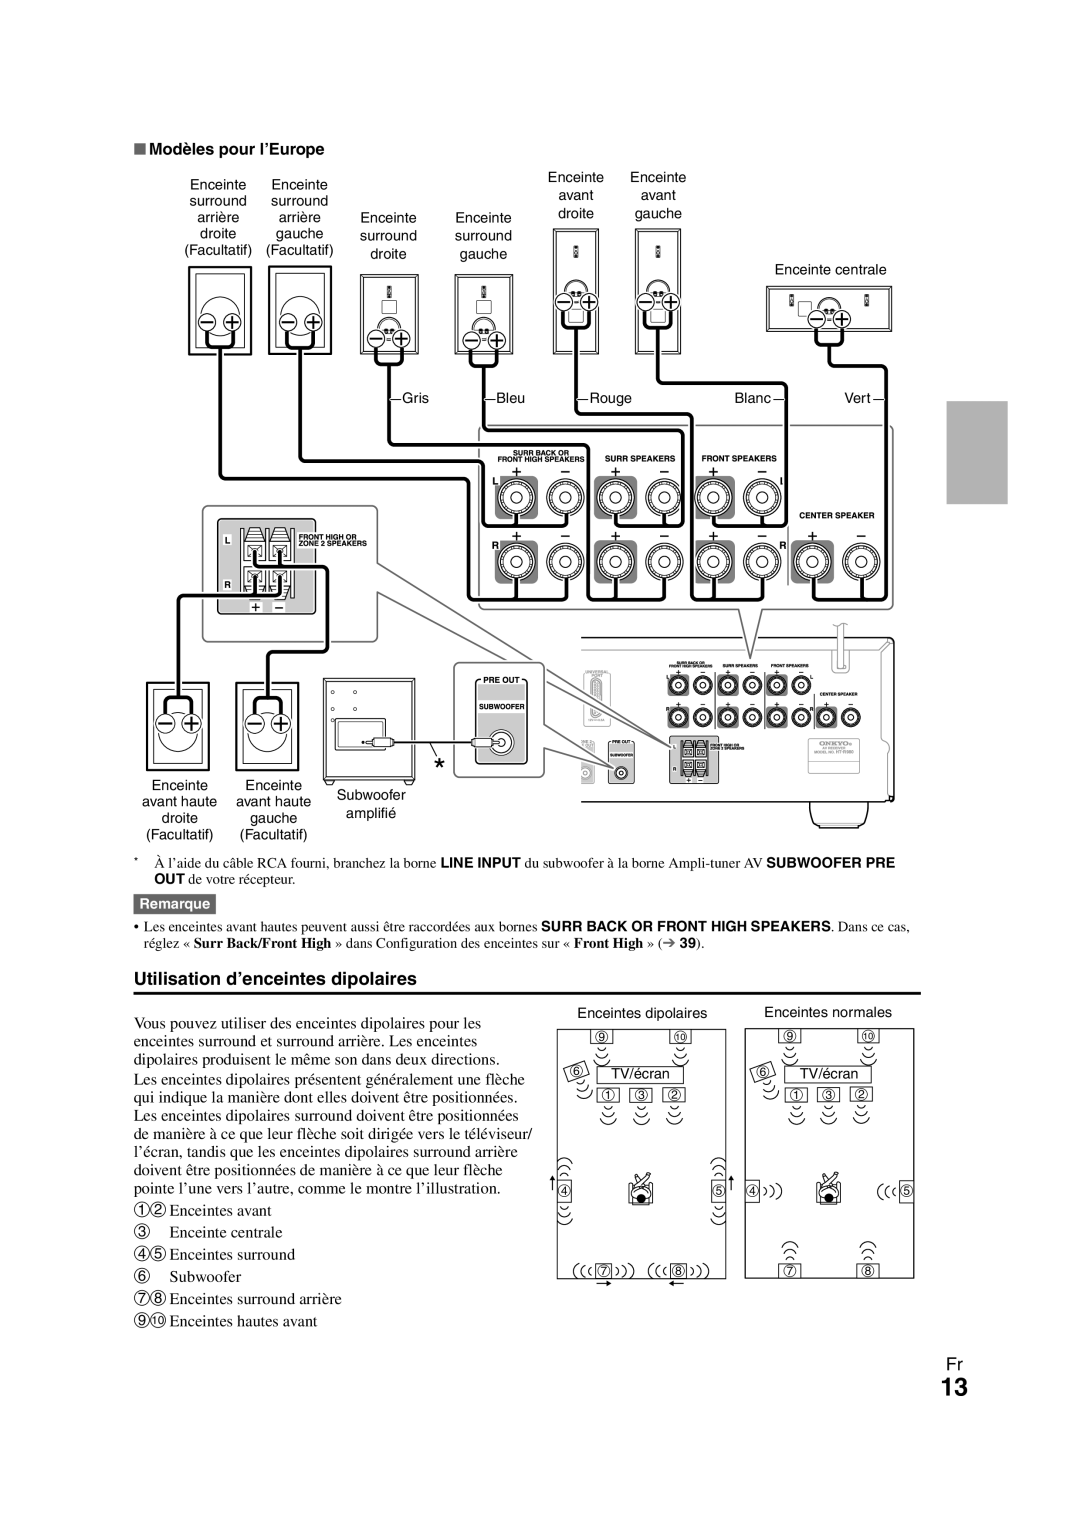 Onkyo HT-R980 instruction manual Utilisation d’enceintes dipolaires, Modèles pour l’Europe 